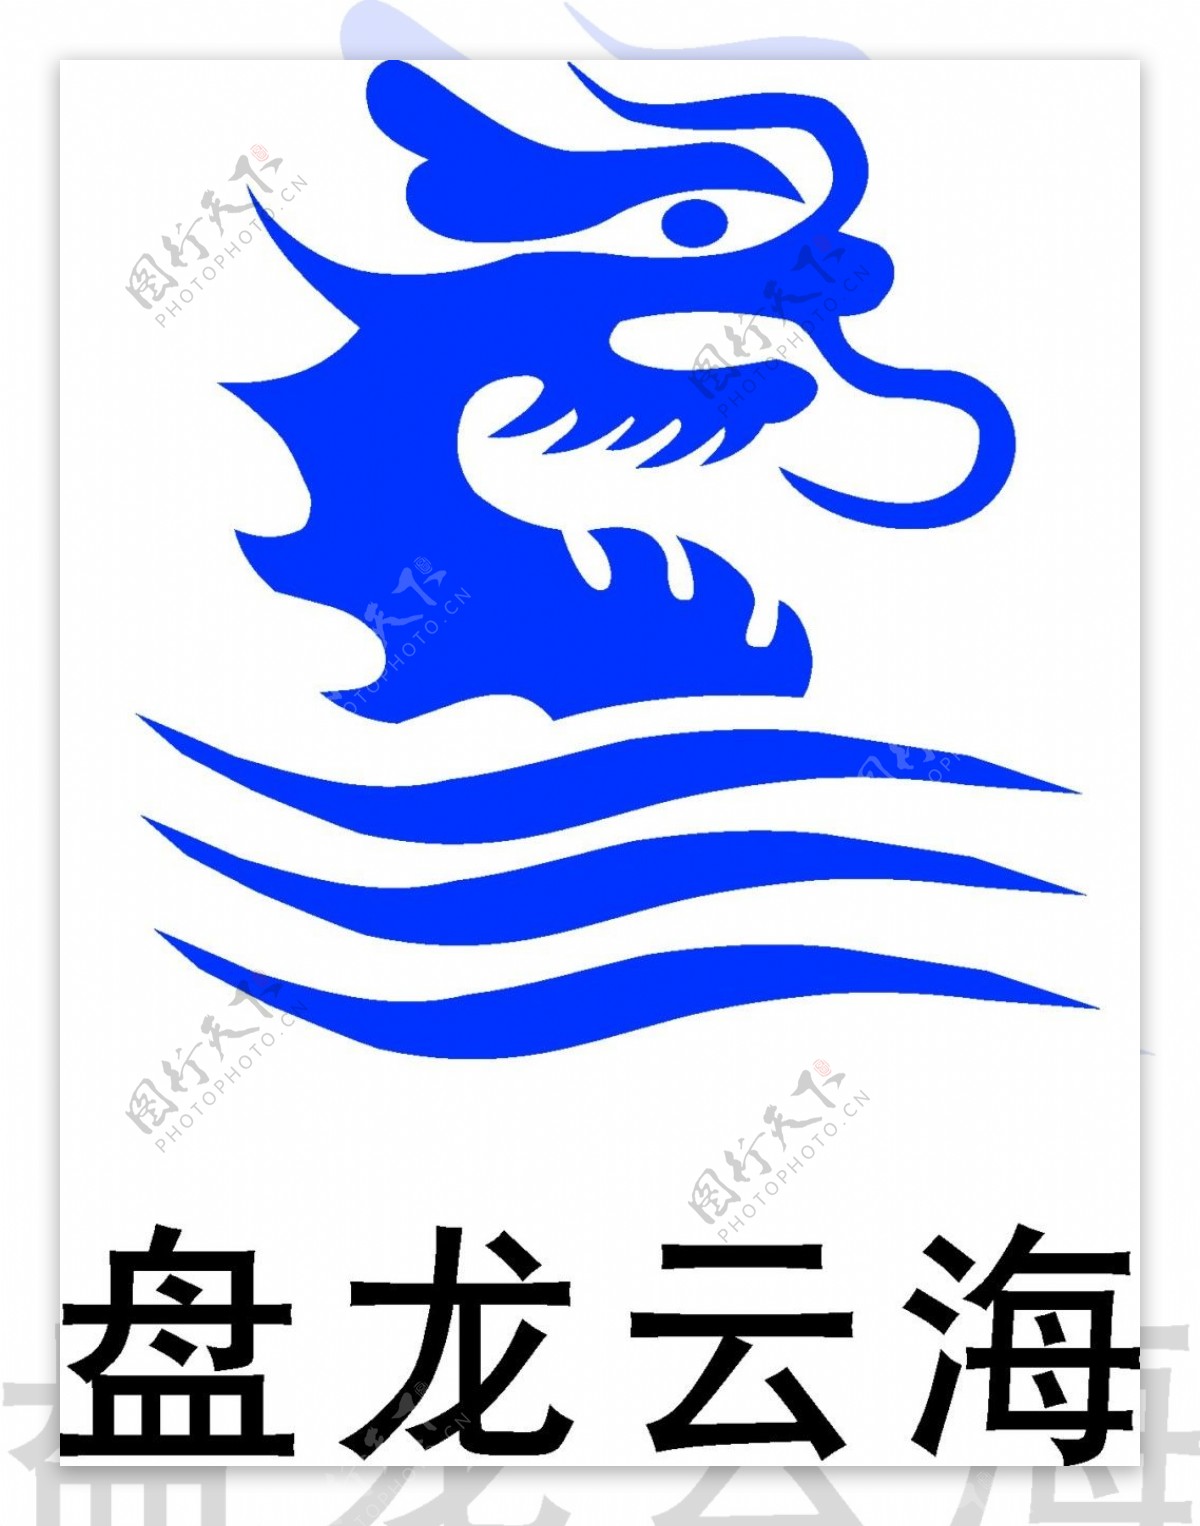 盘龙云海logo素材矢量图LOGO设计